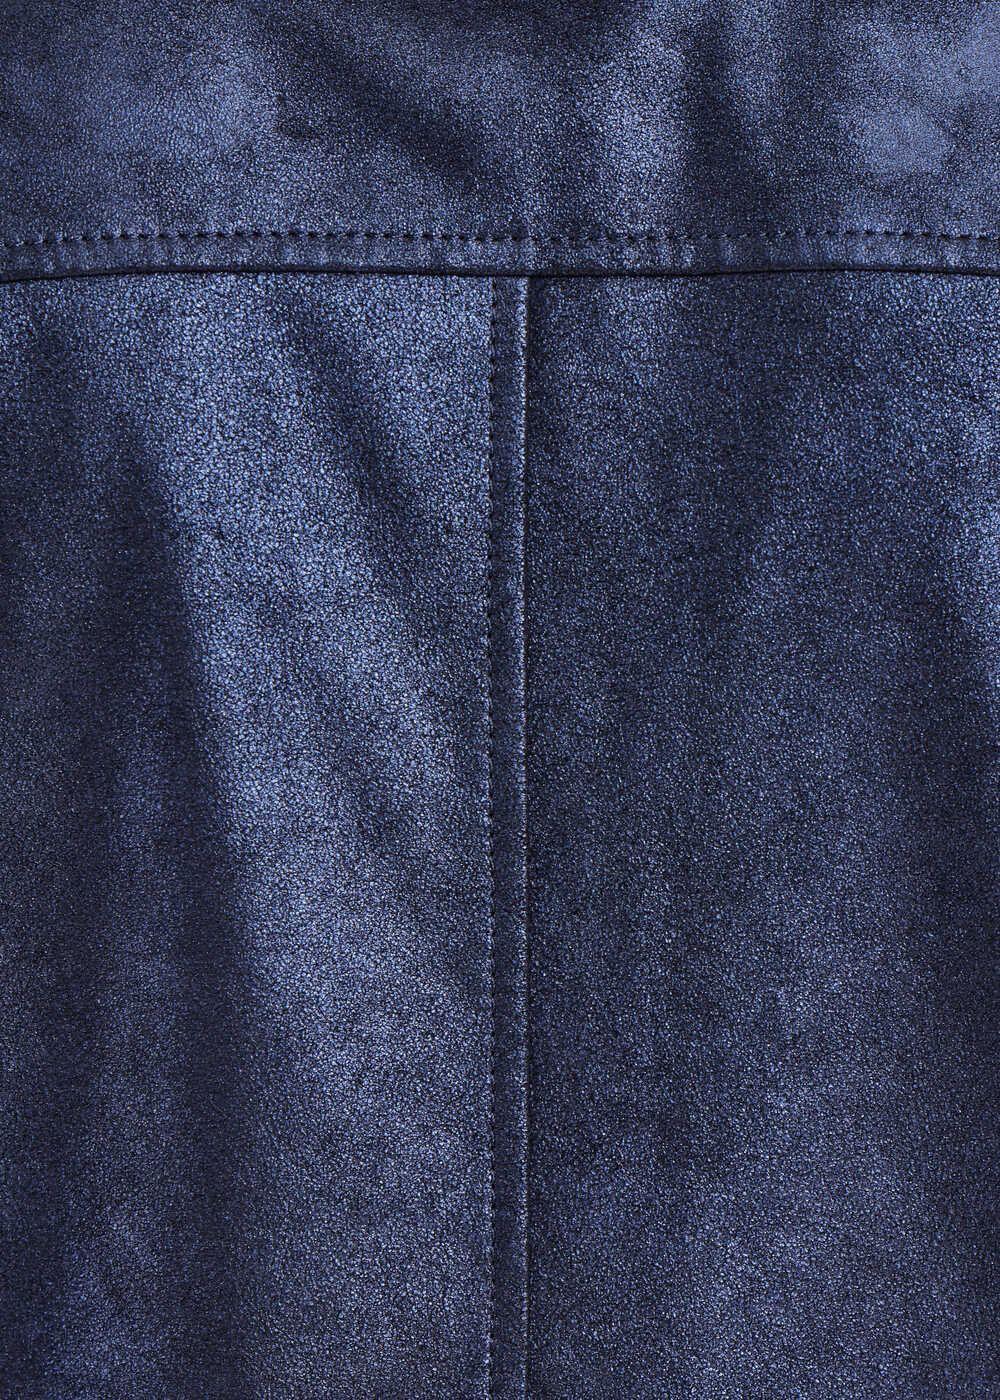 Jaqueta de couro azul marinho